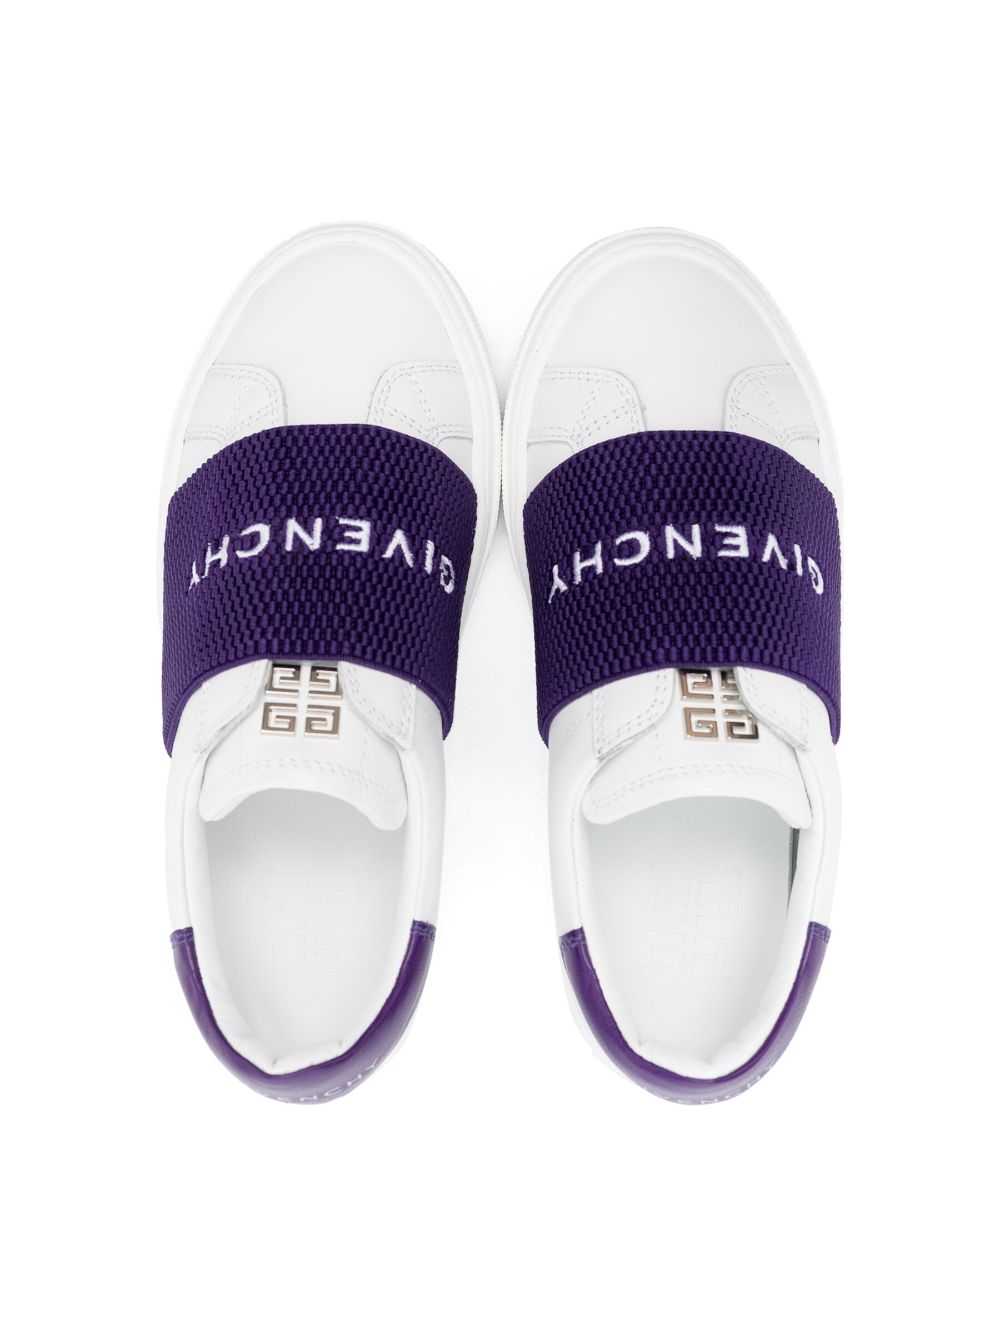 Sneakers bianche con fascia viola con logo